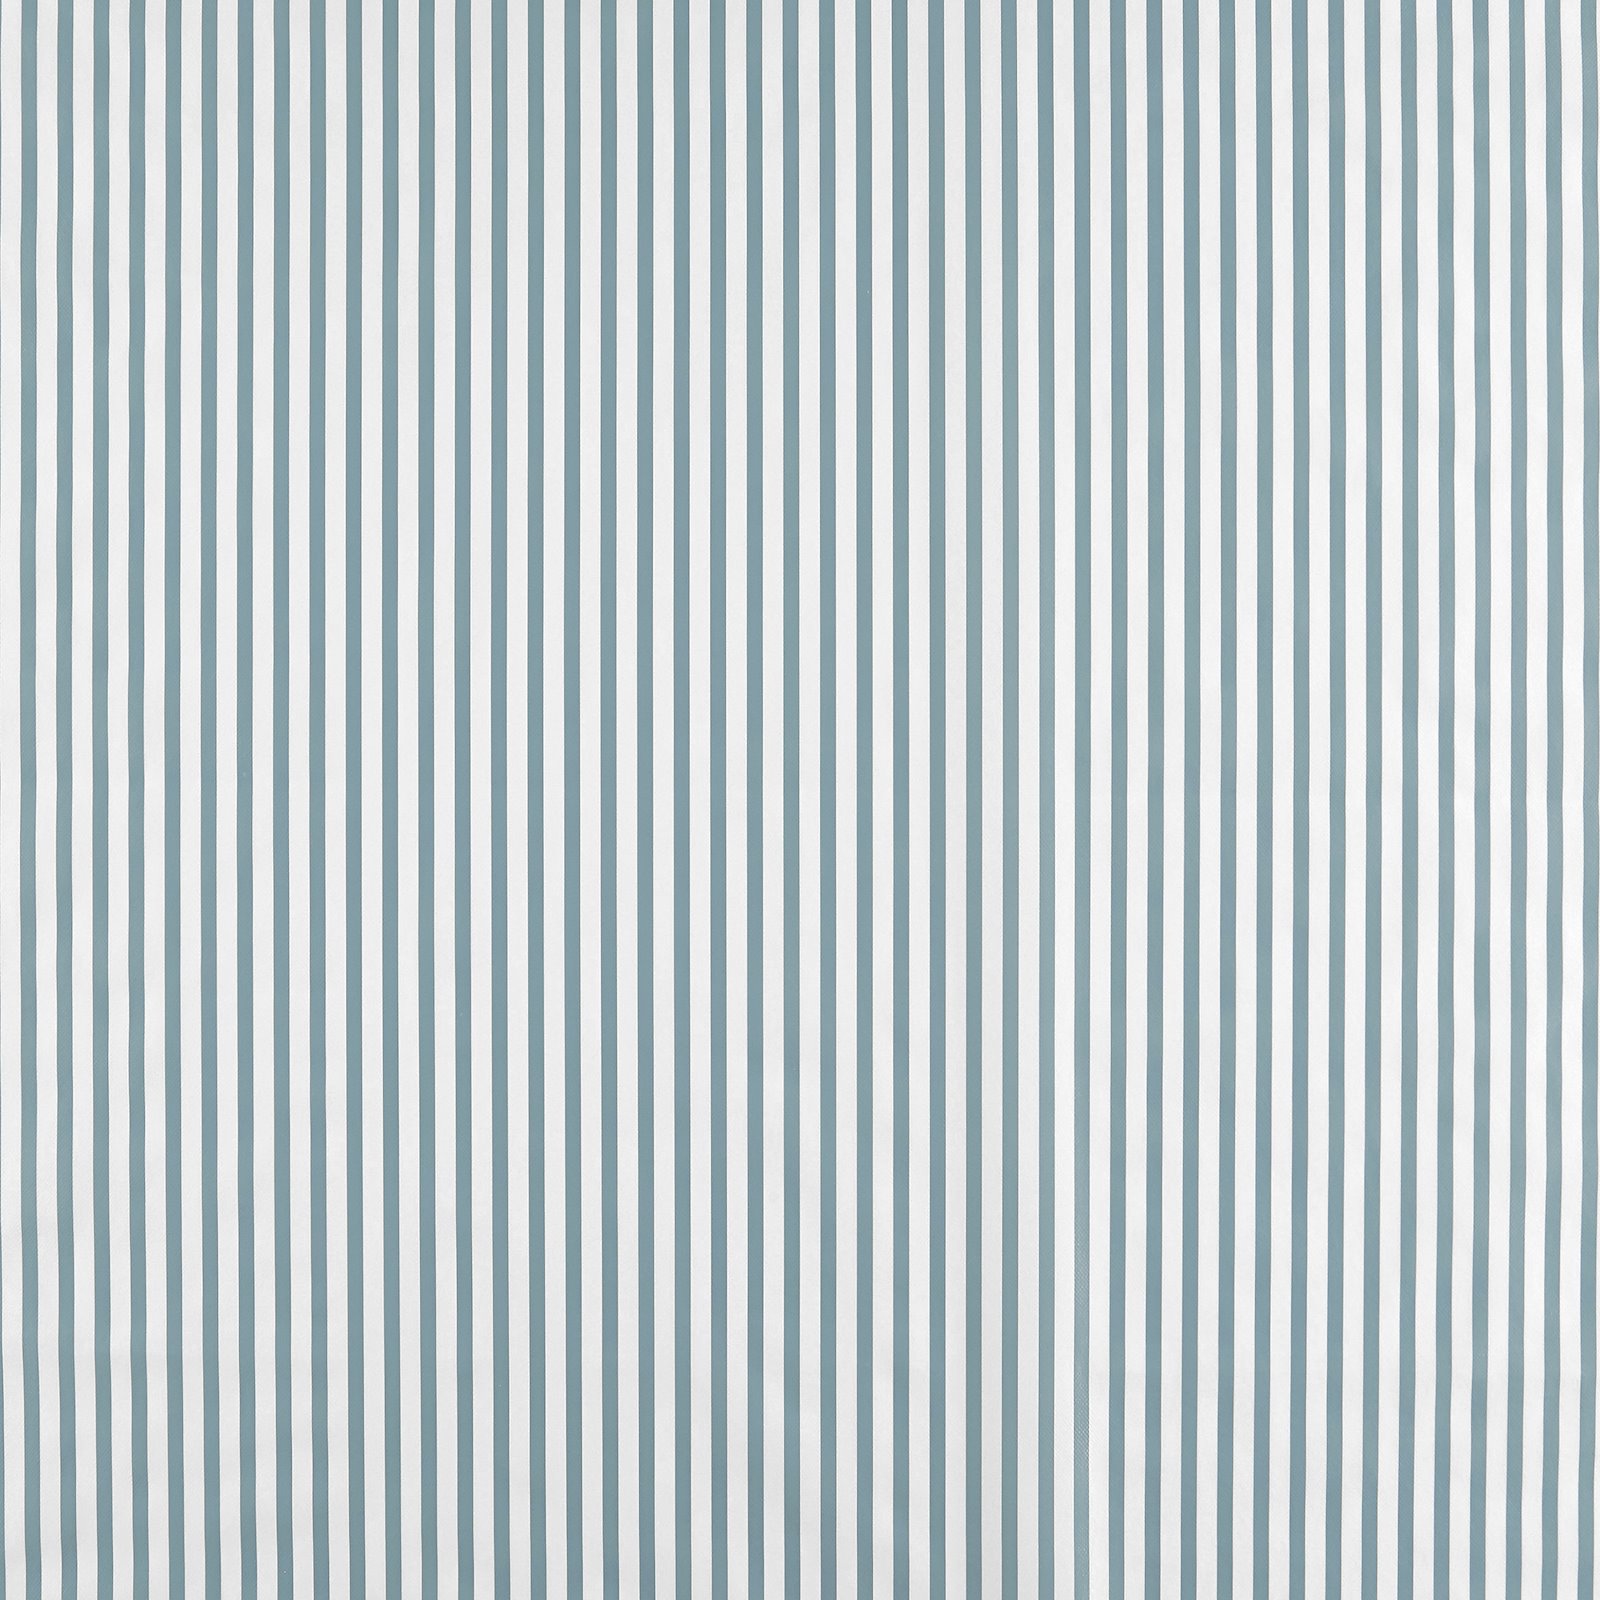 Voksduk støvet blå/hvit striper 861498_pack_sp